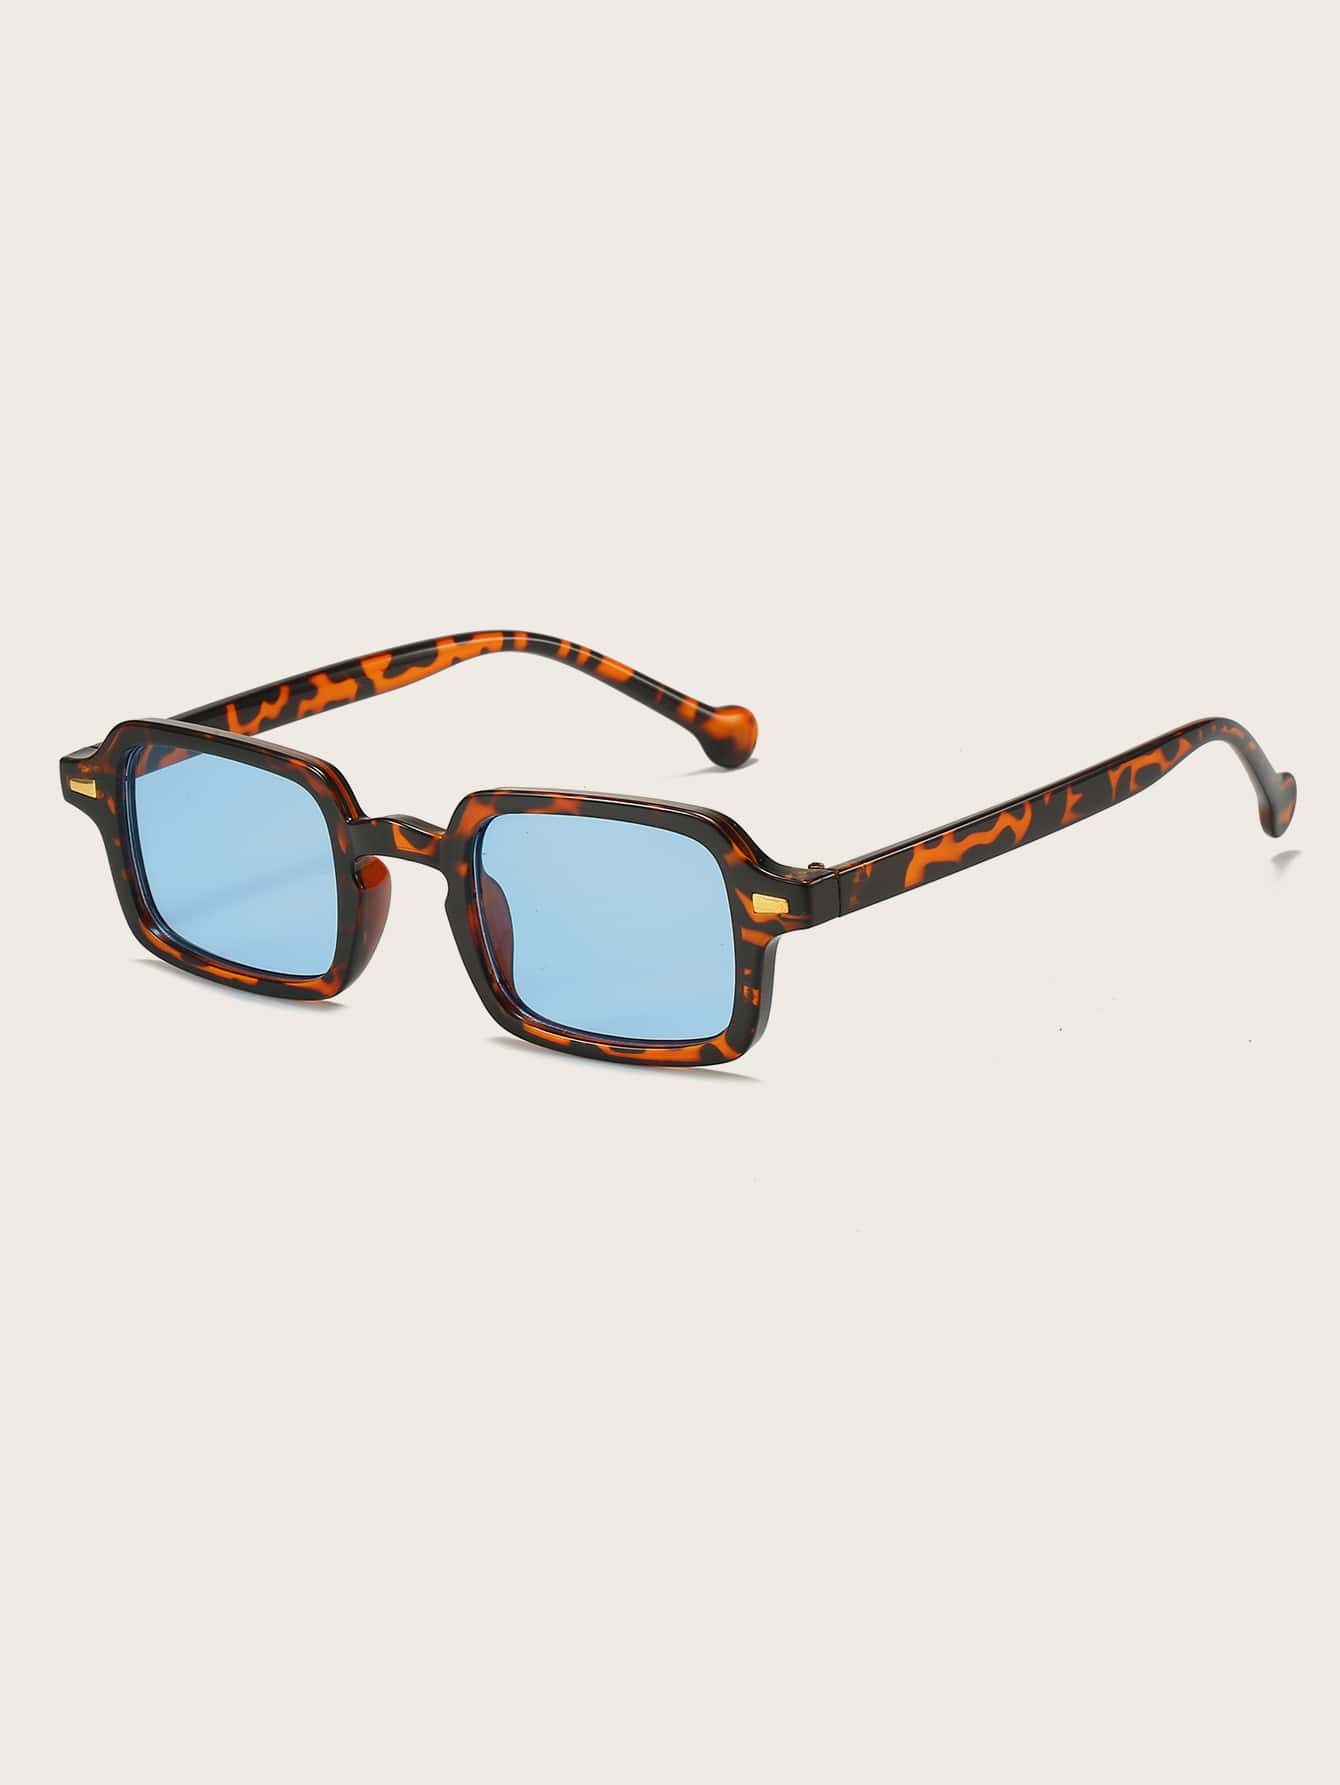 Модные очки в квадратной оправе черепахового цвета для повседневной жизни в стиле бохо цена и фото